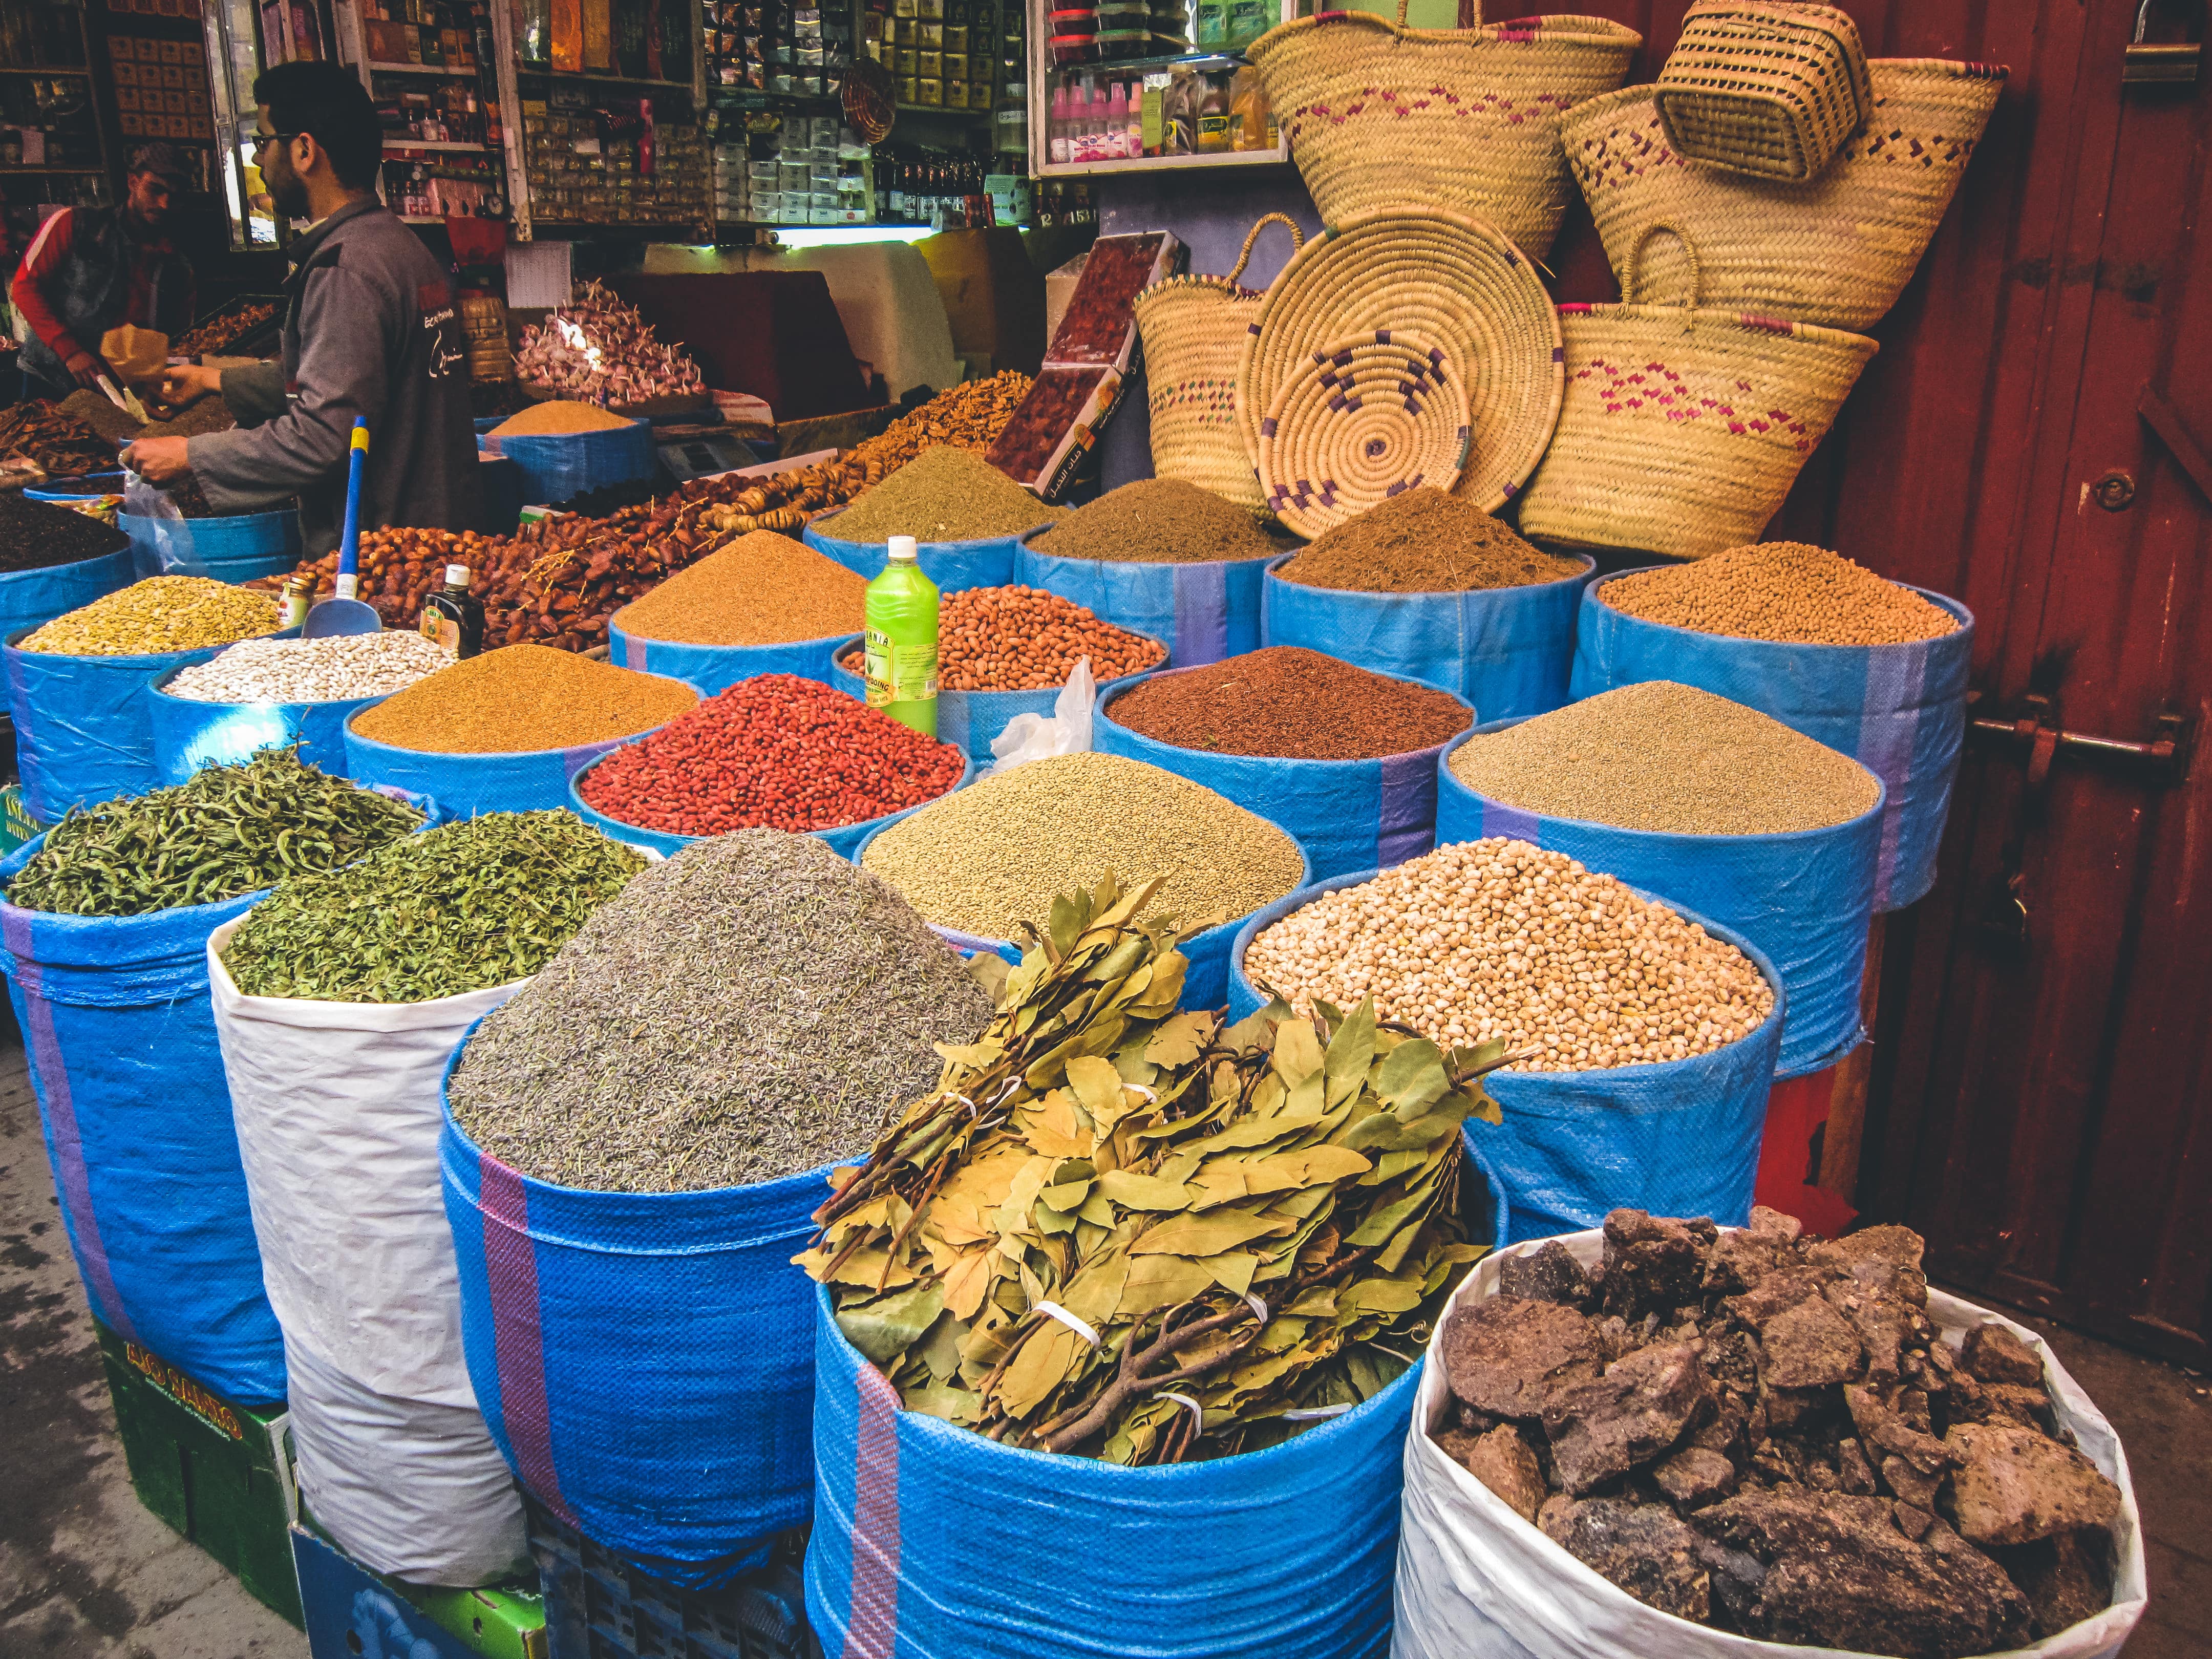 A visit to a Moroccan market | Cultural Vagabond | Travel blog